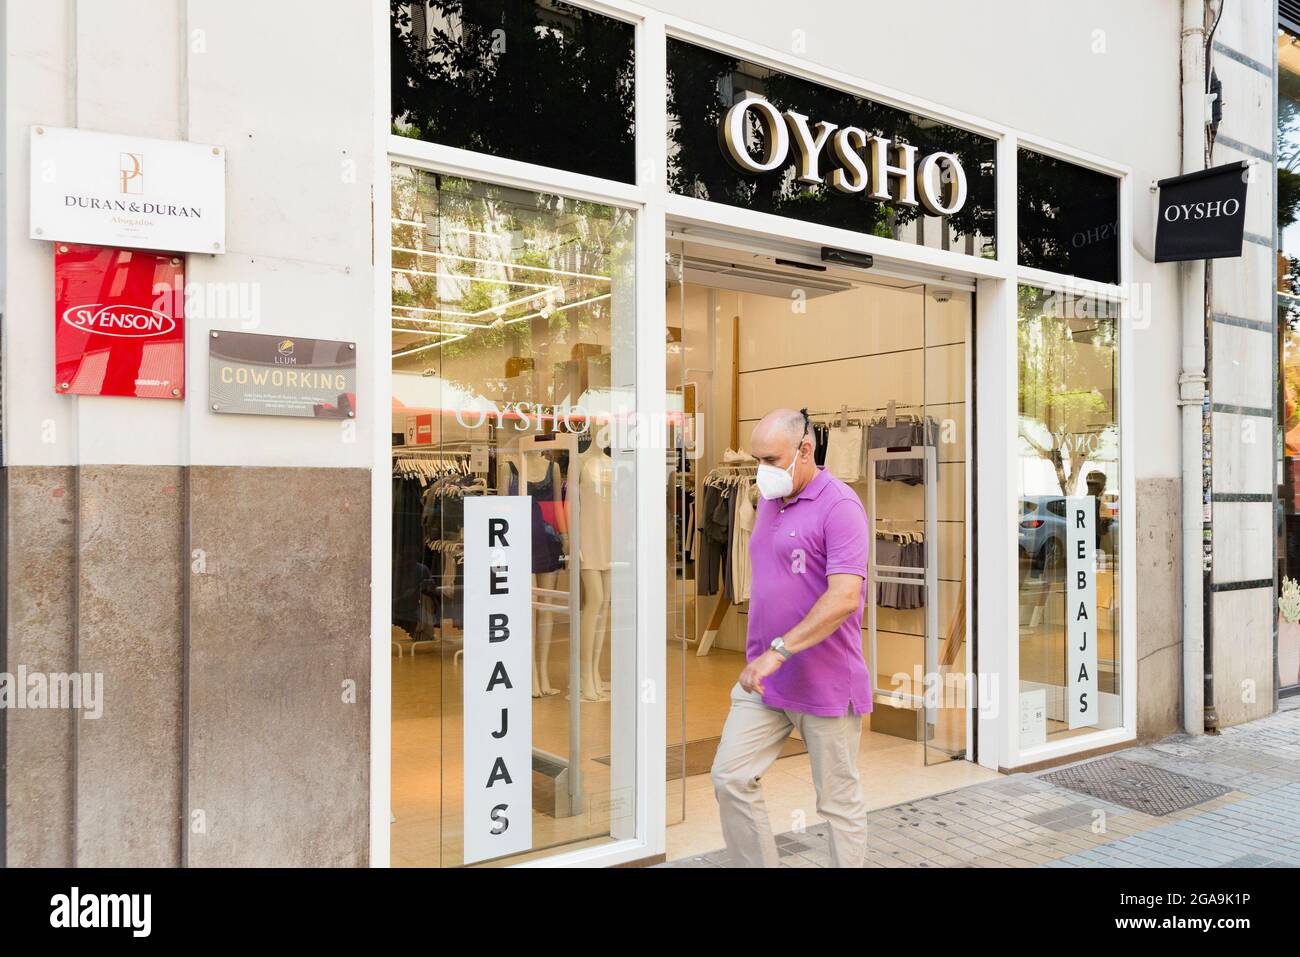 Un homme marche à côté du magasin de vêtements Oysho à Valence Photo Stock  - Alamy